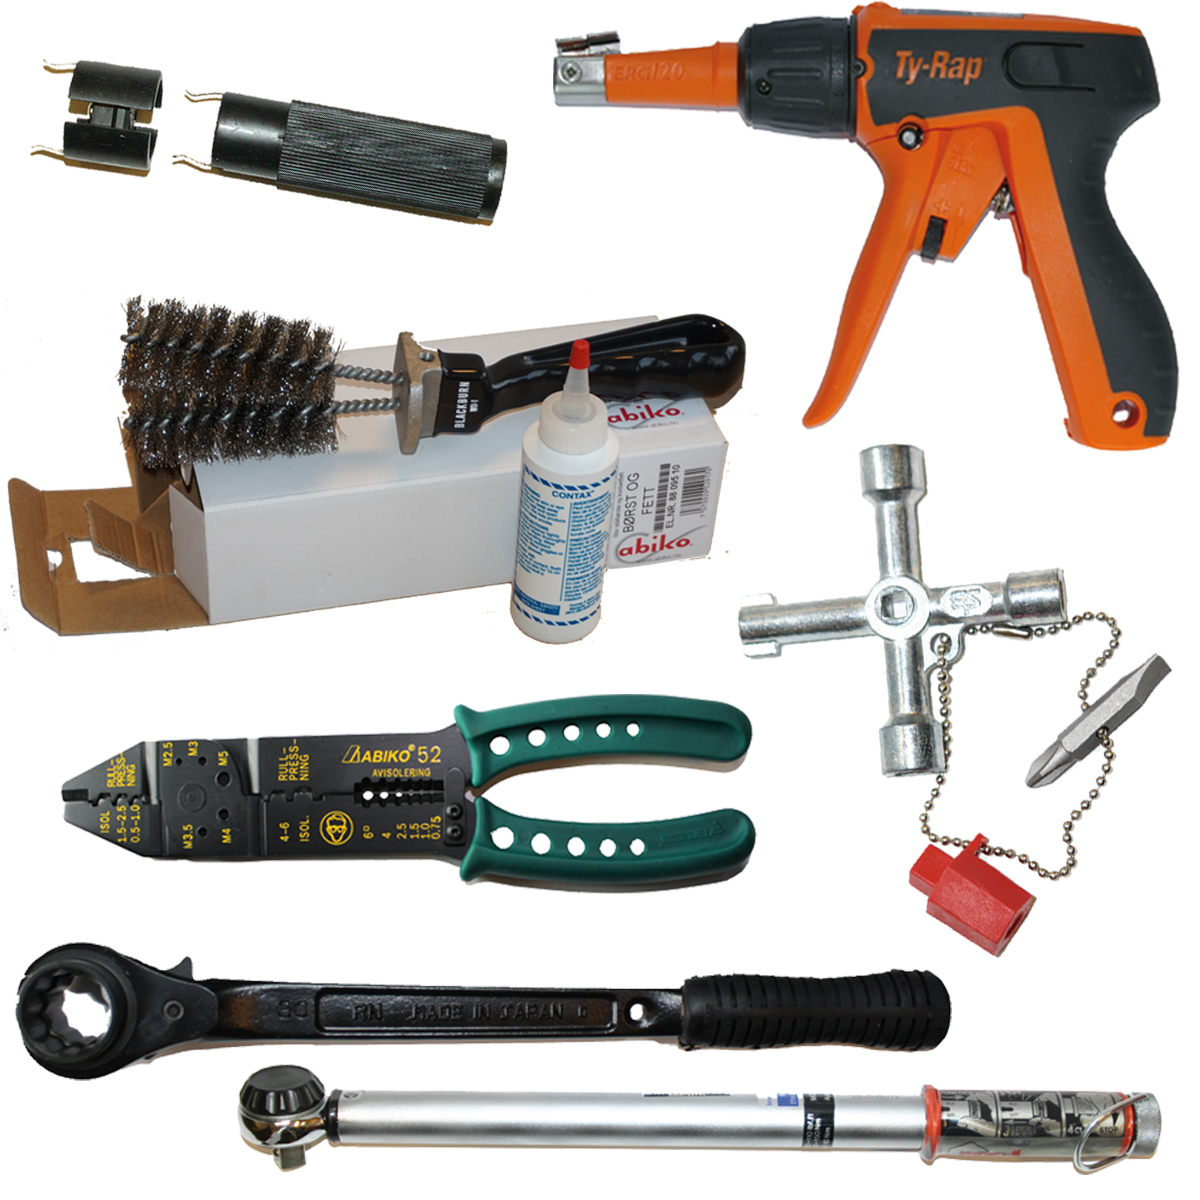 Øvrig verktøy og utstyr